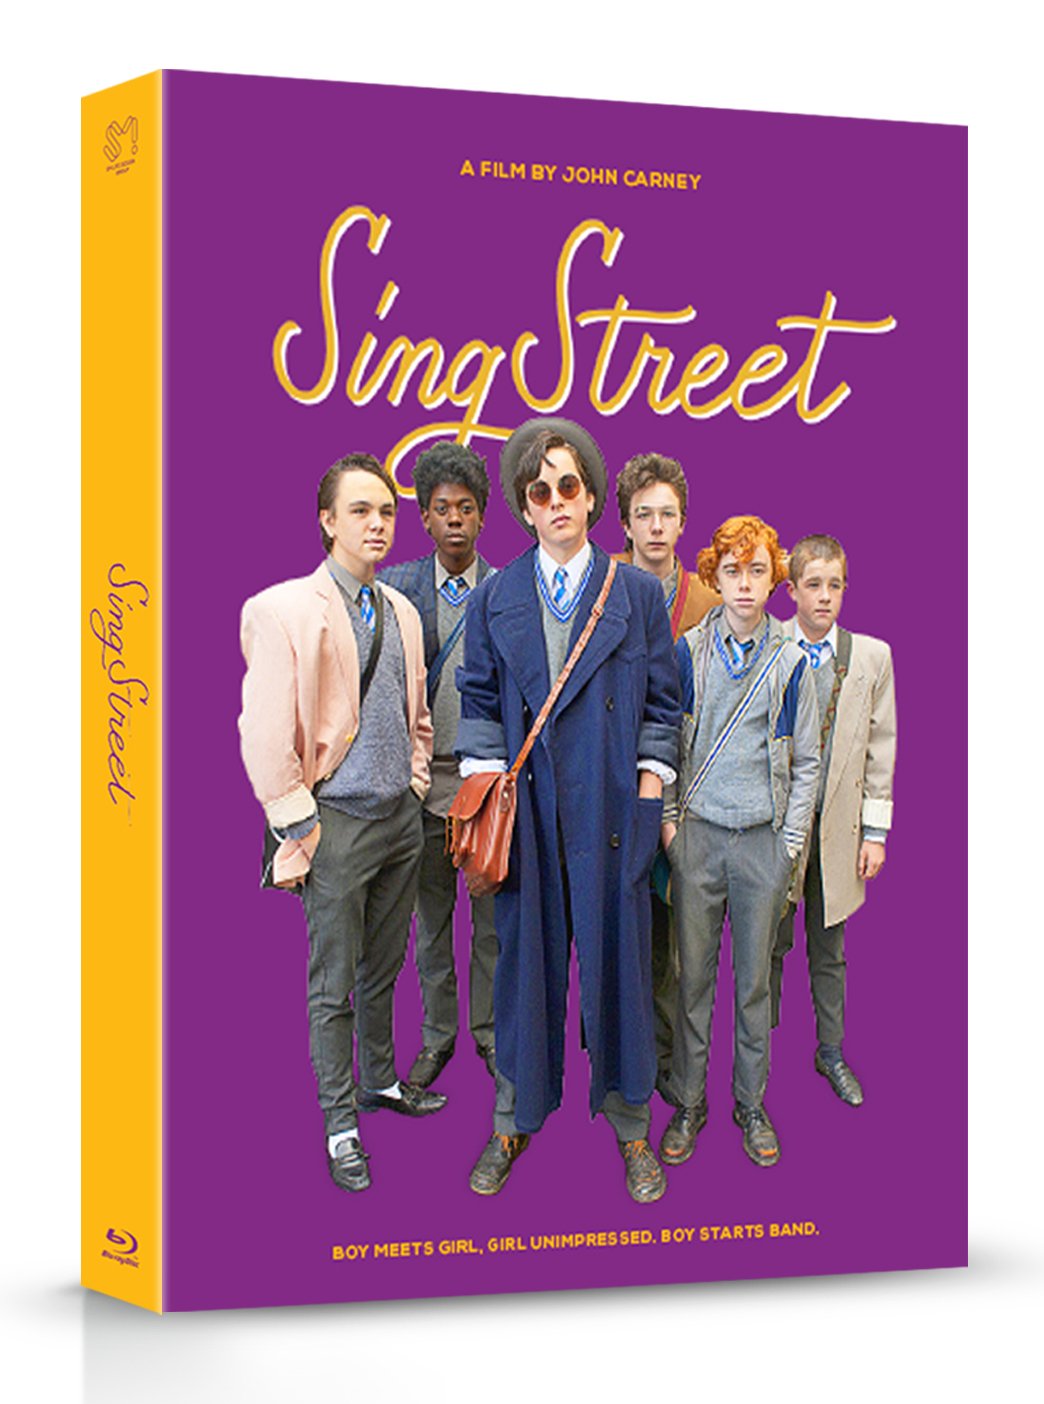 [Blu-ray] Sing Street(BD + OST) B Type Fullslip Steelbook LE